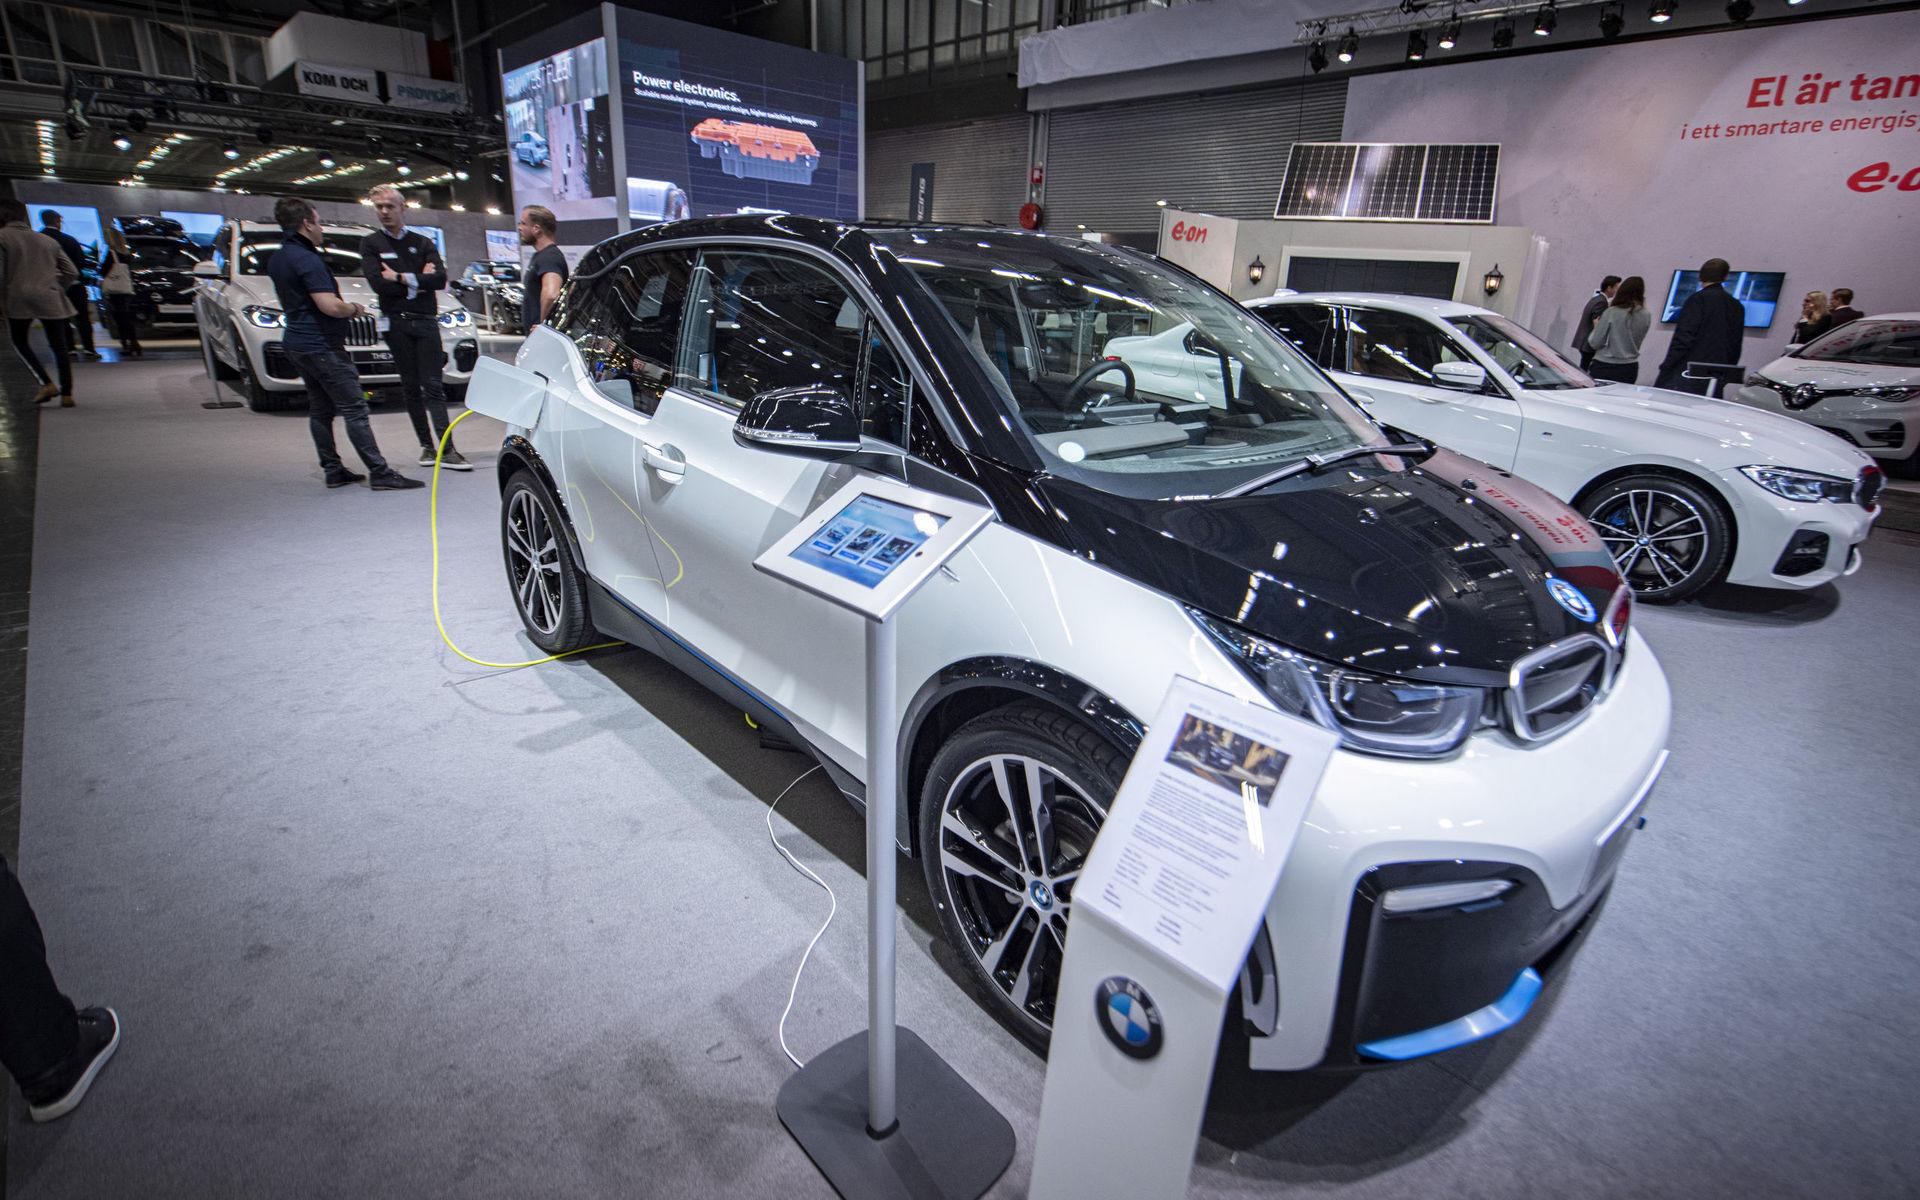 BMW I3 är en ren elbil. &quot;Liten och lätt, väger bara tolvhundra kilo. Räckvidd på 30 mil. I3 kom redan 2013 så vi har haft den ganska länge men batterierna har utvecklats från tolv mil, till 20 och nu 302, säger BMW:s Johan Sjöholm.